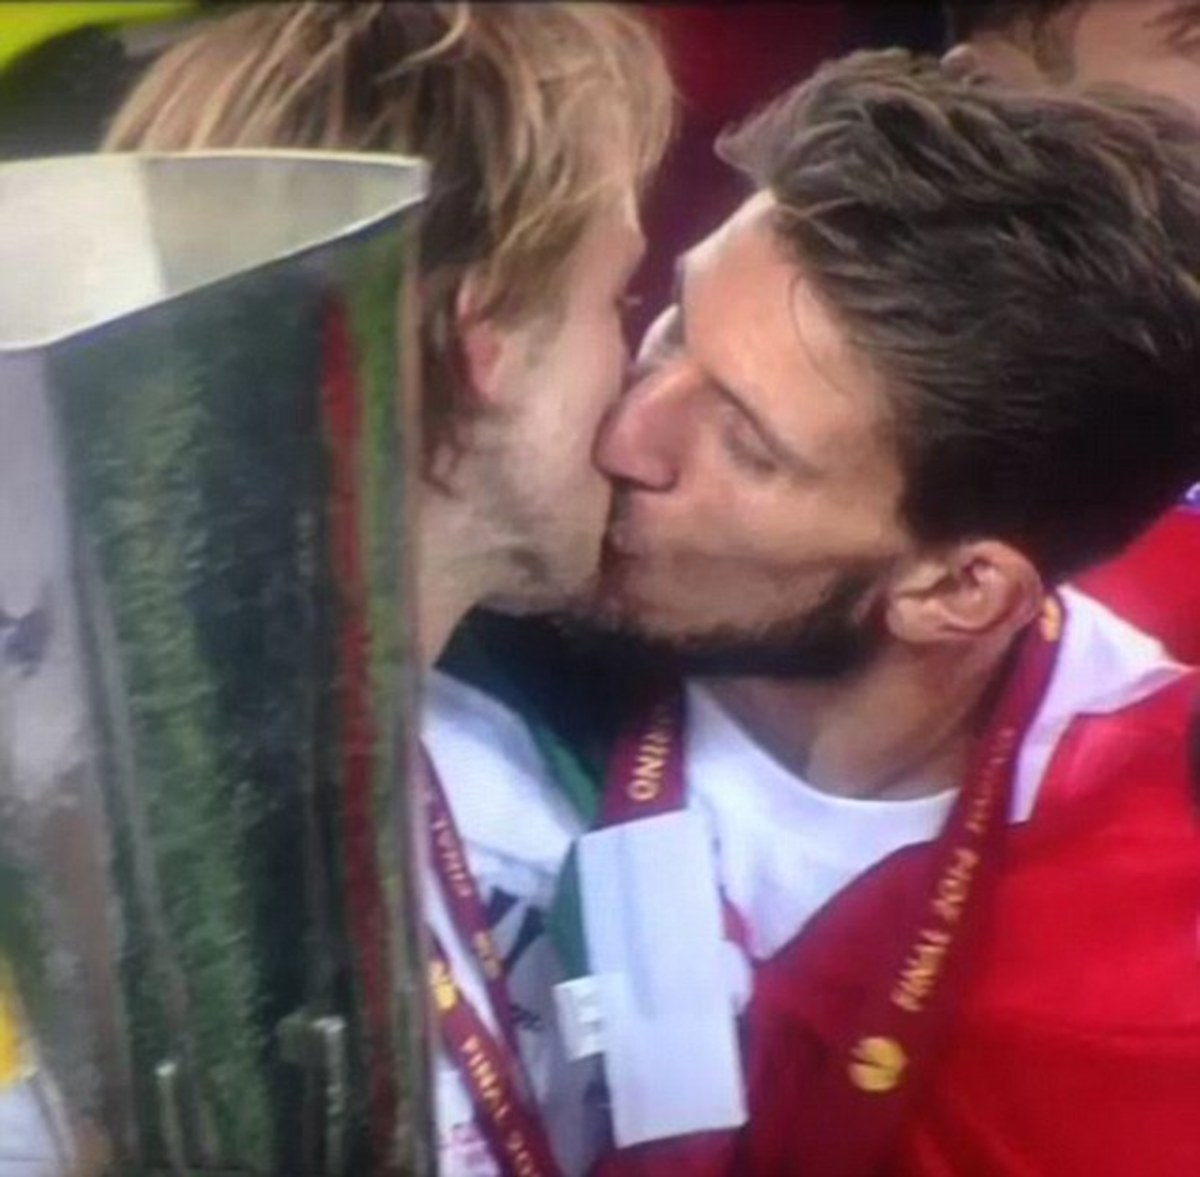 Φιλήθηκαν στο στόμα παίκτες της Σεβίλλης μετά την κούπα (VIDEO)